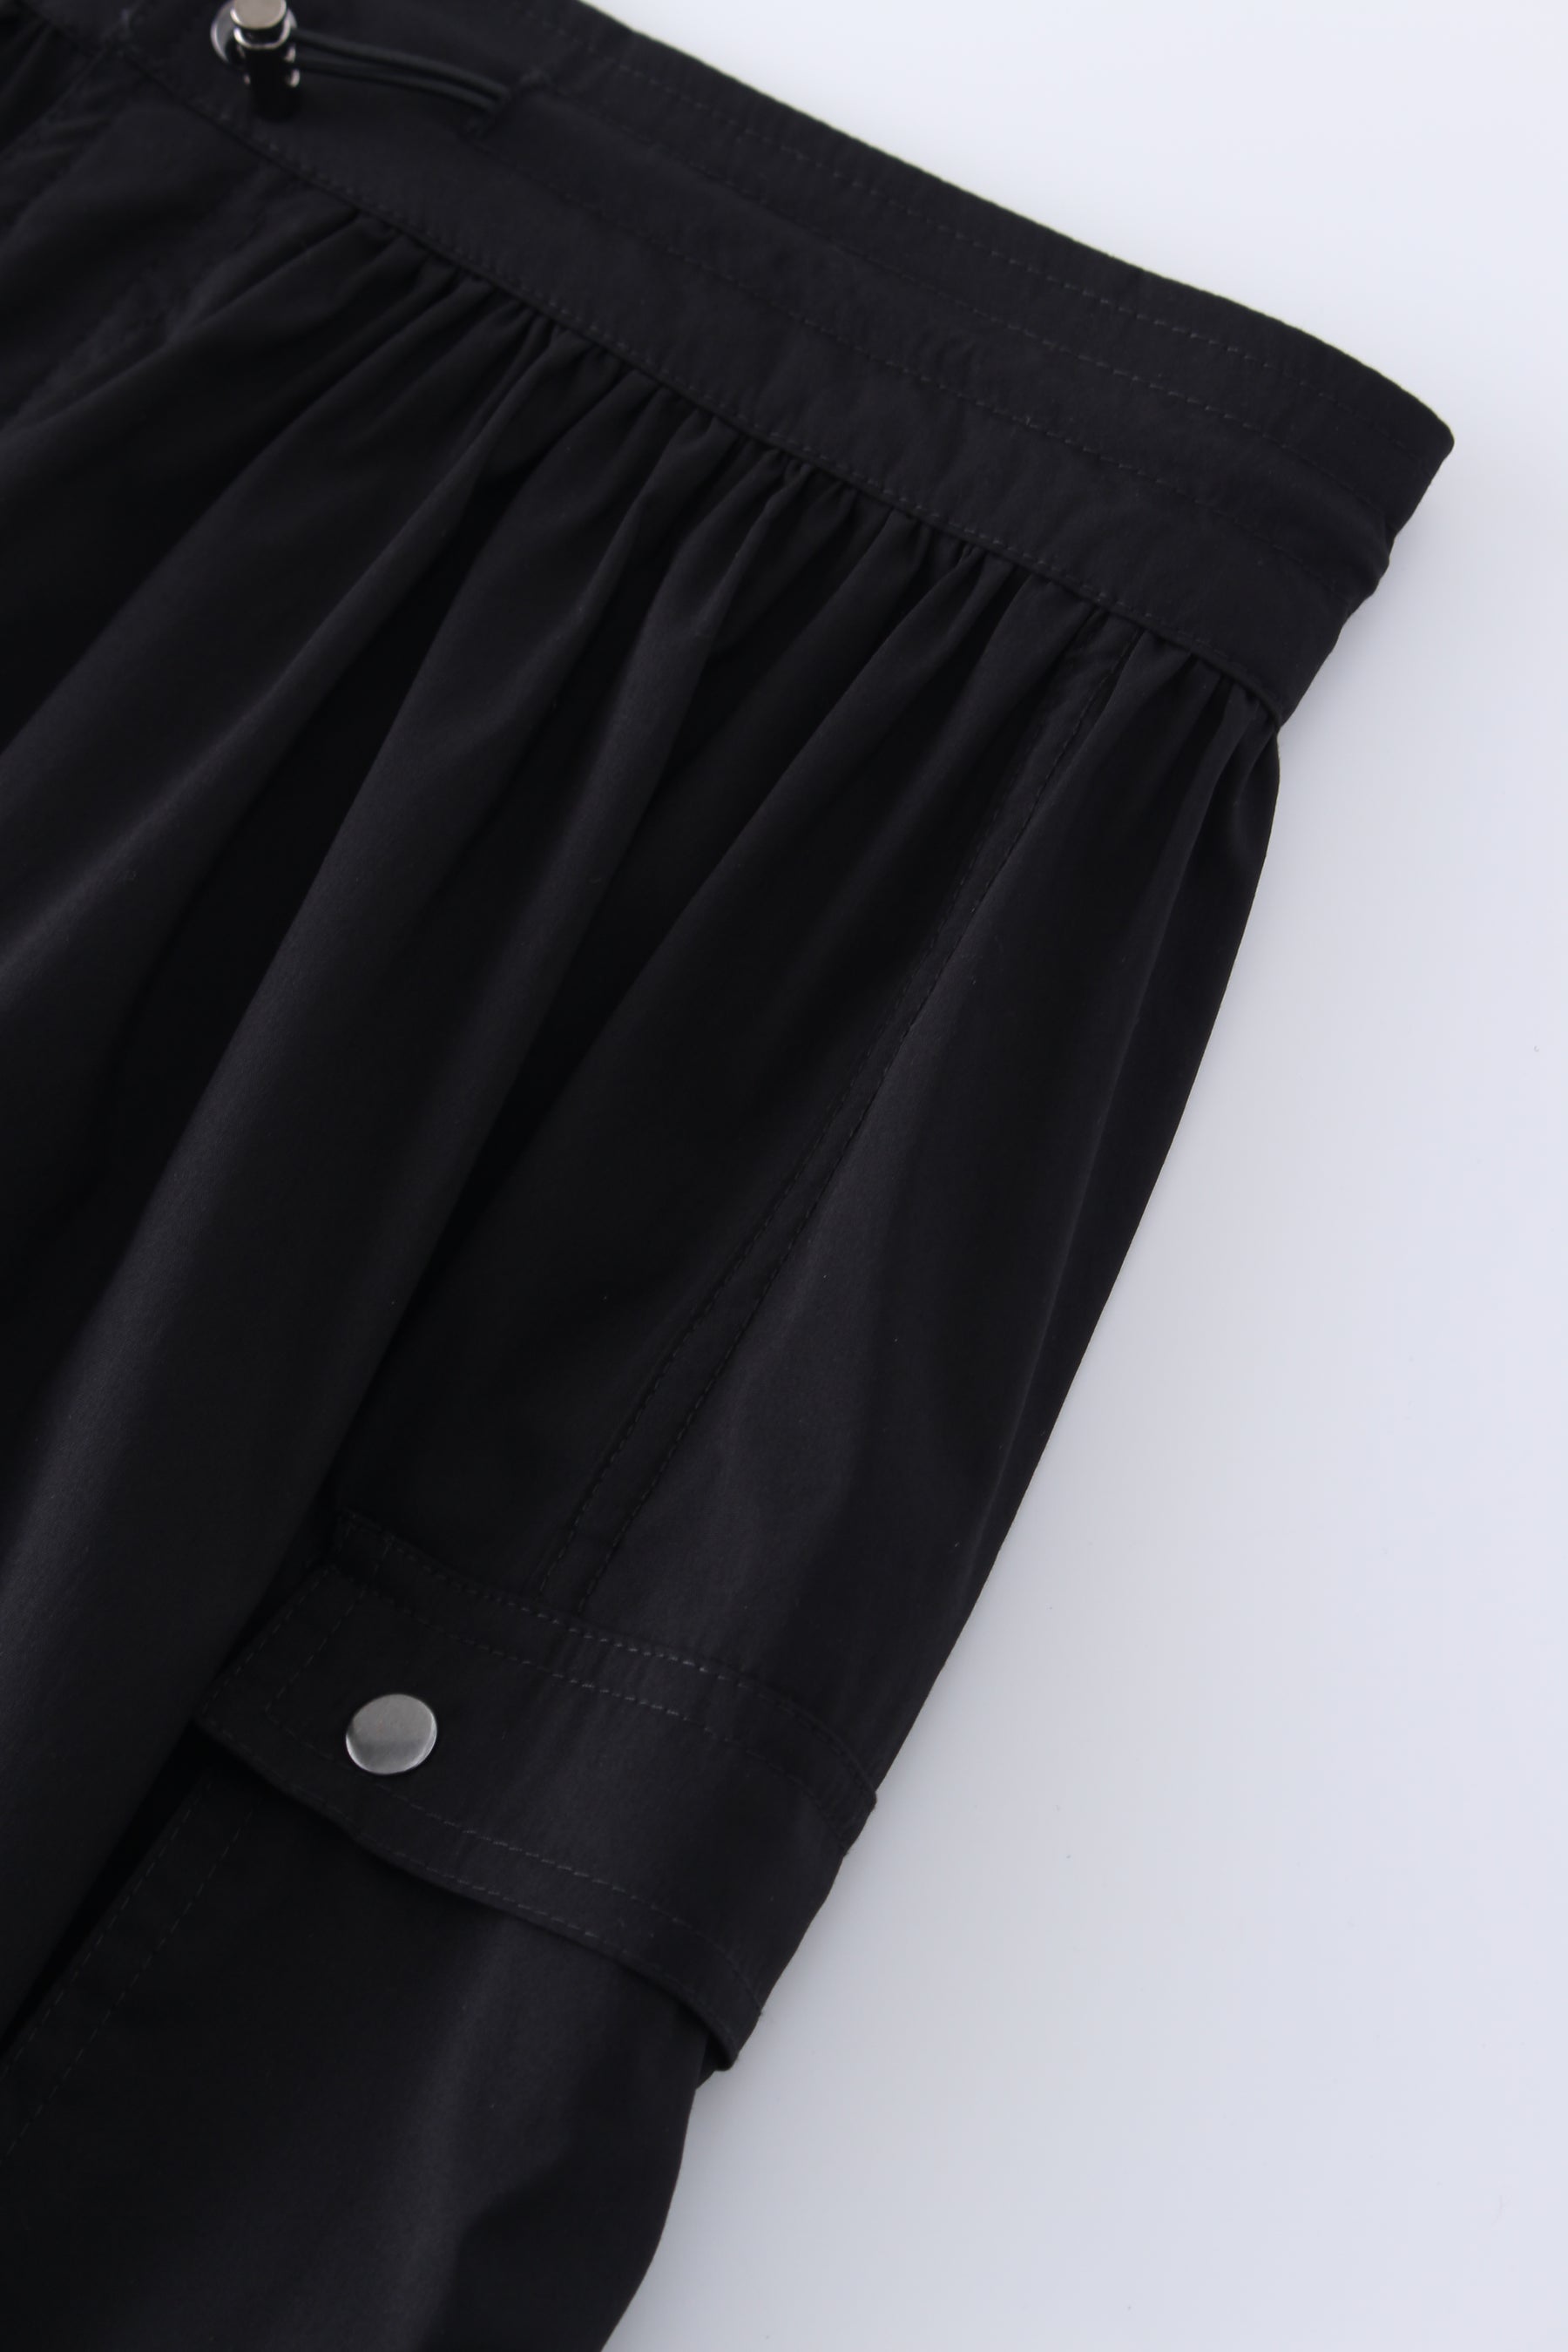 Waist Pull Skirt-Black